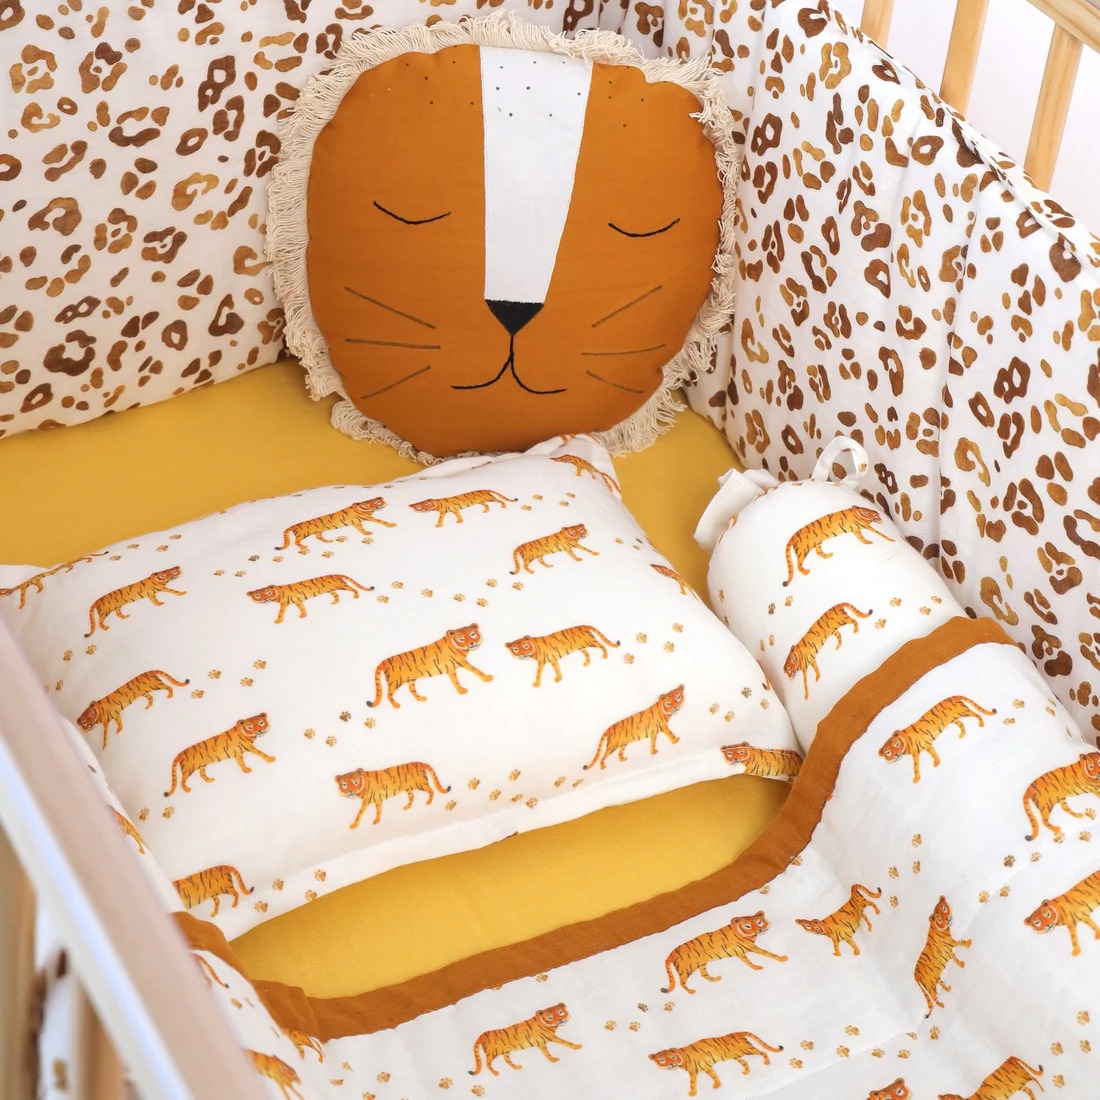 Cot Bedding Sets for Babies1.jpeg